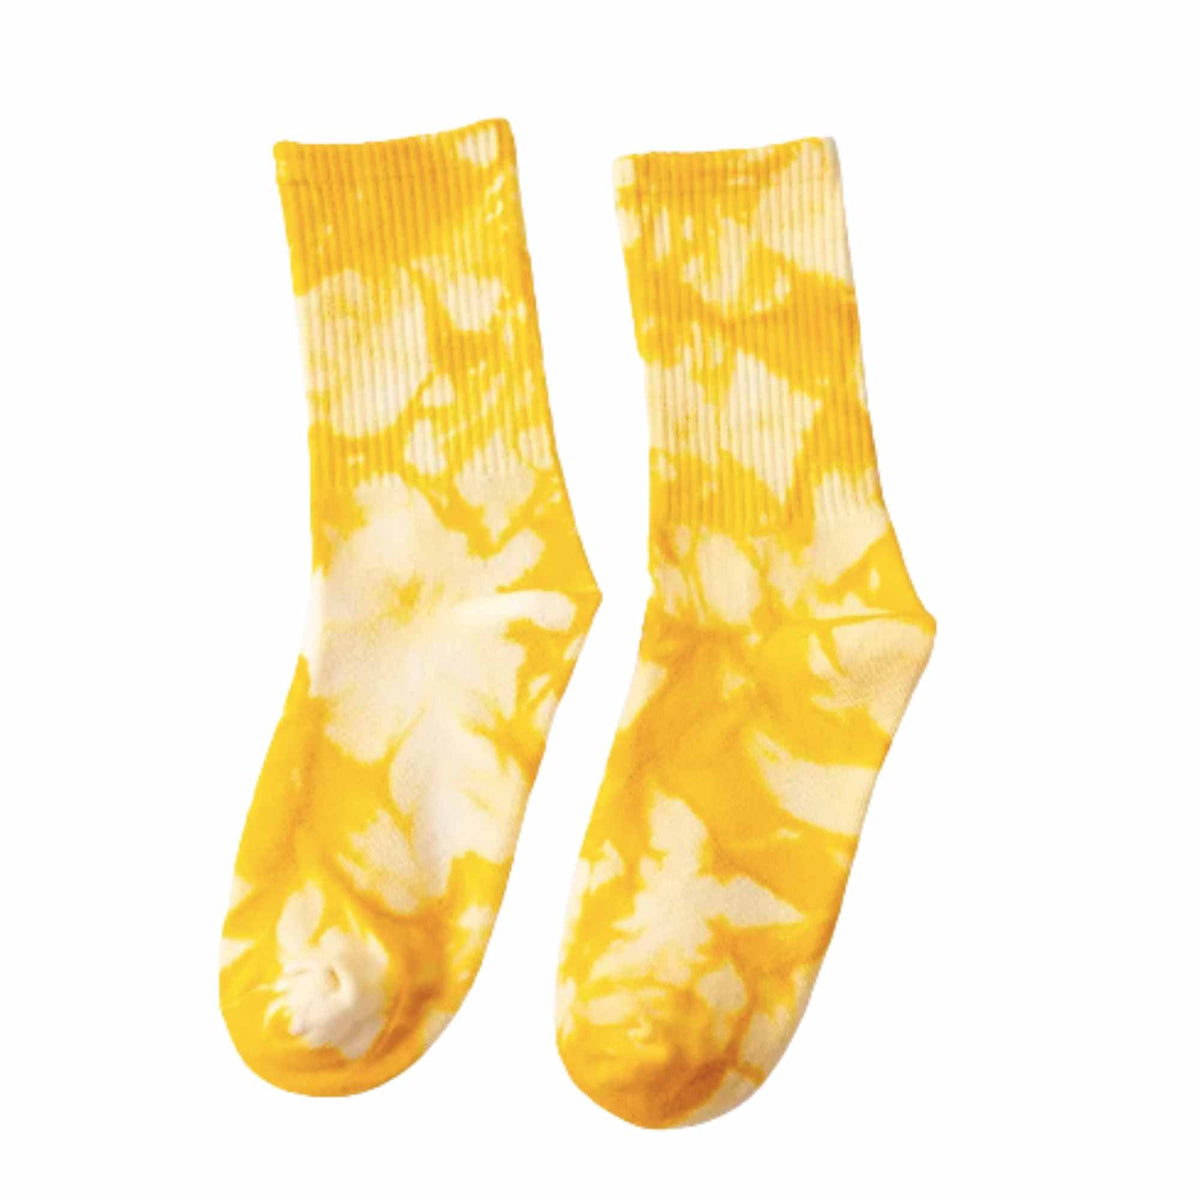 Adult &amp; Kid Tie Dye Socks - Pack of 5